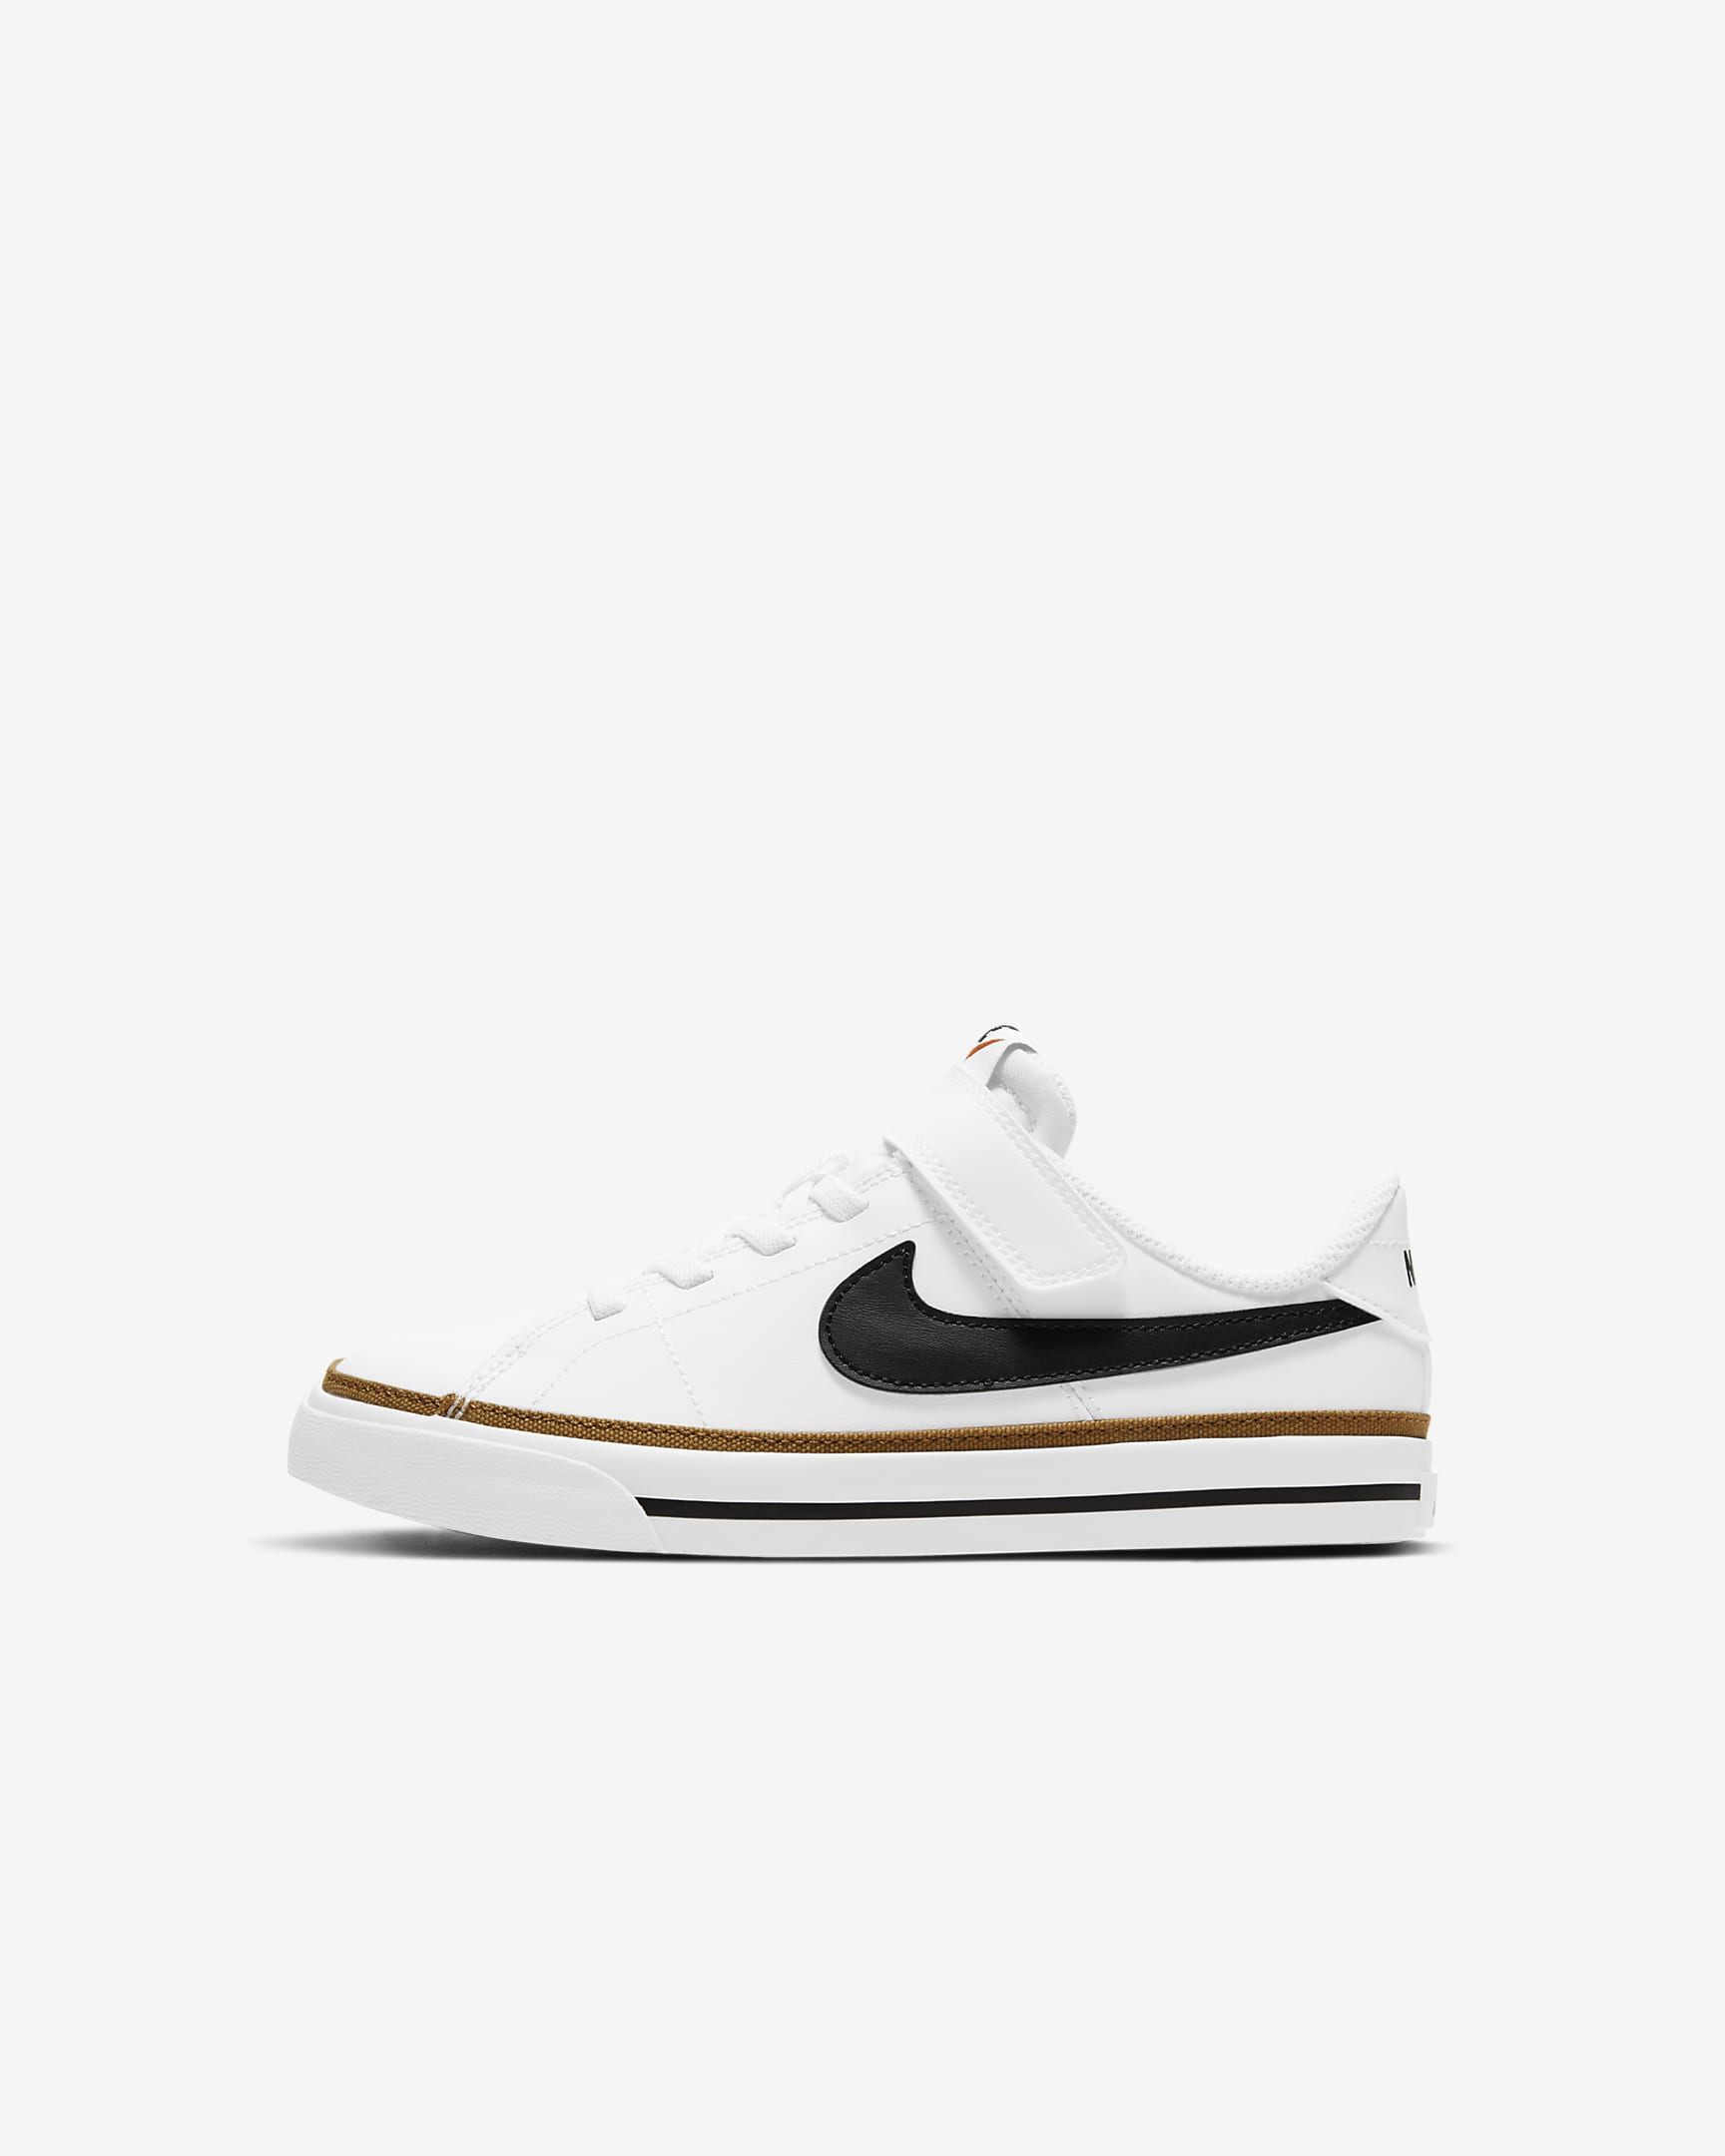 Nike Court Legacy Little Kids' Shoes - White/Desert Ochre/Gum Light Brown/Black